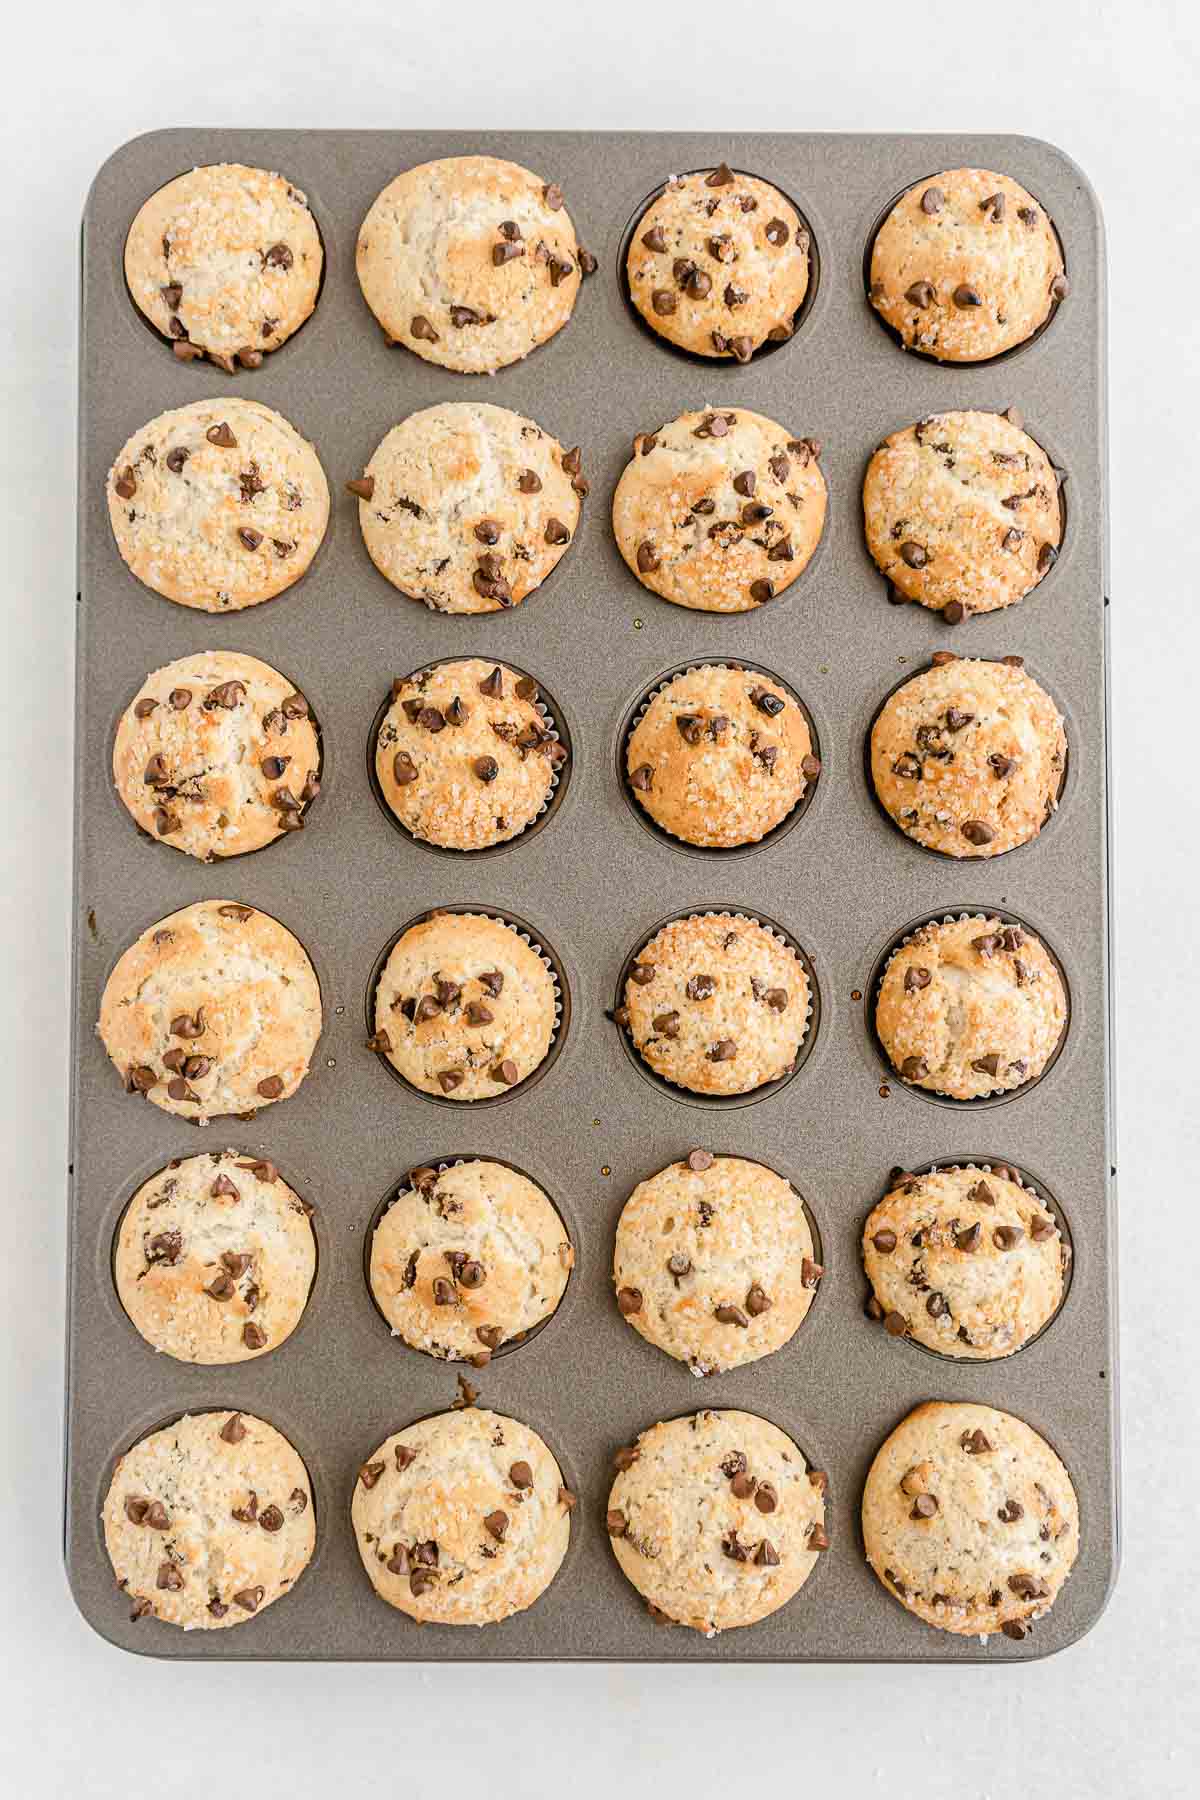 24 Chocolate Chip Mini Muffins in the mini muffin pan.